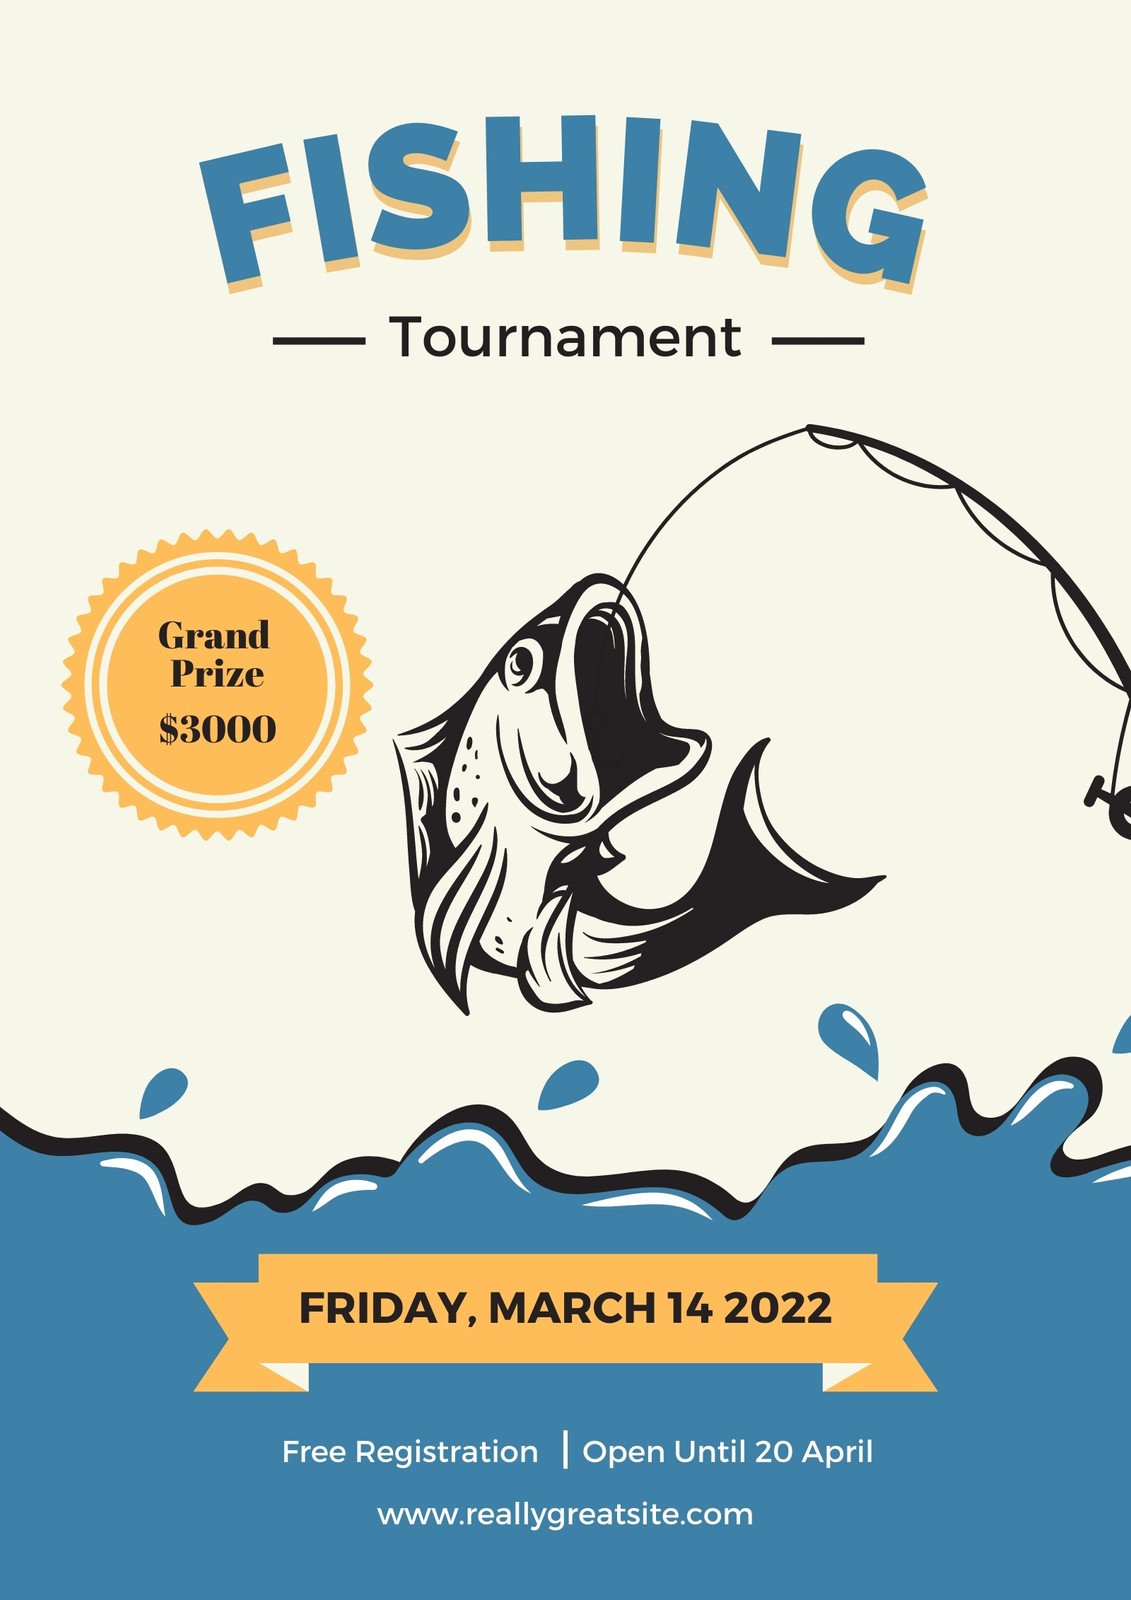 https://marketplace.canva.com/EAFDvwejVDI/1/0/1131w/canva-fishing-tournament-flyer-VYMkwENI1J0.jpg